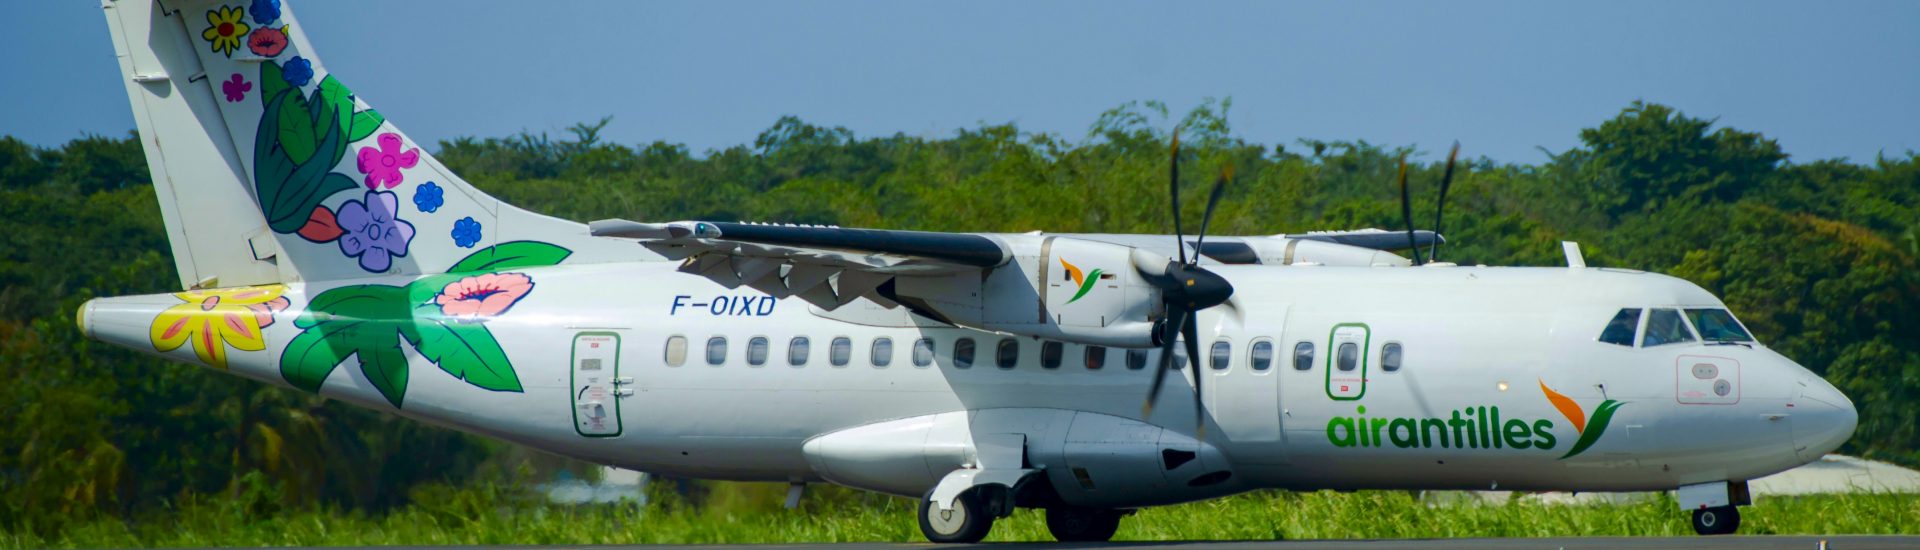 ATR42-500 Air Antilles F-OIXD